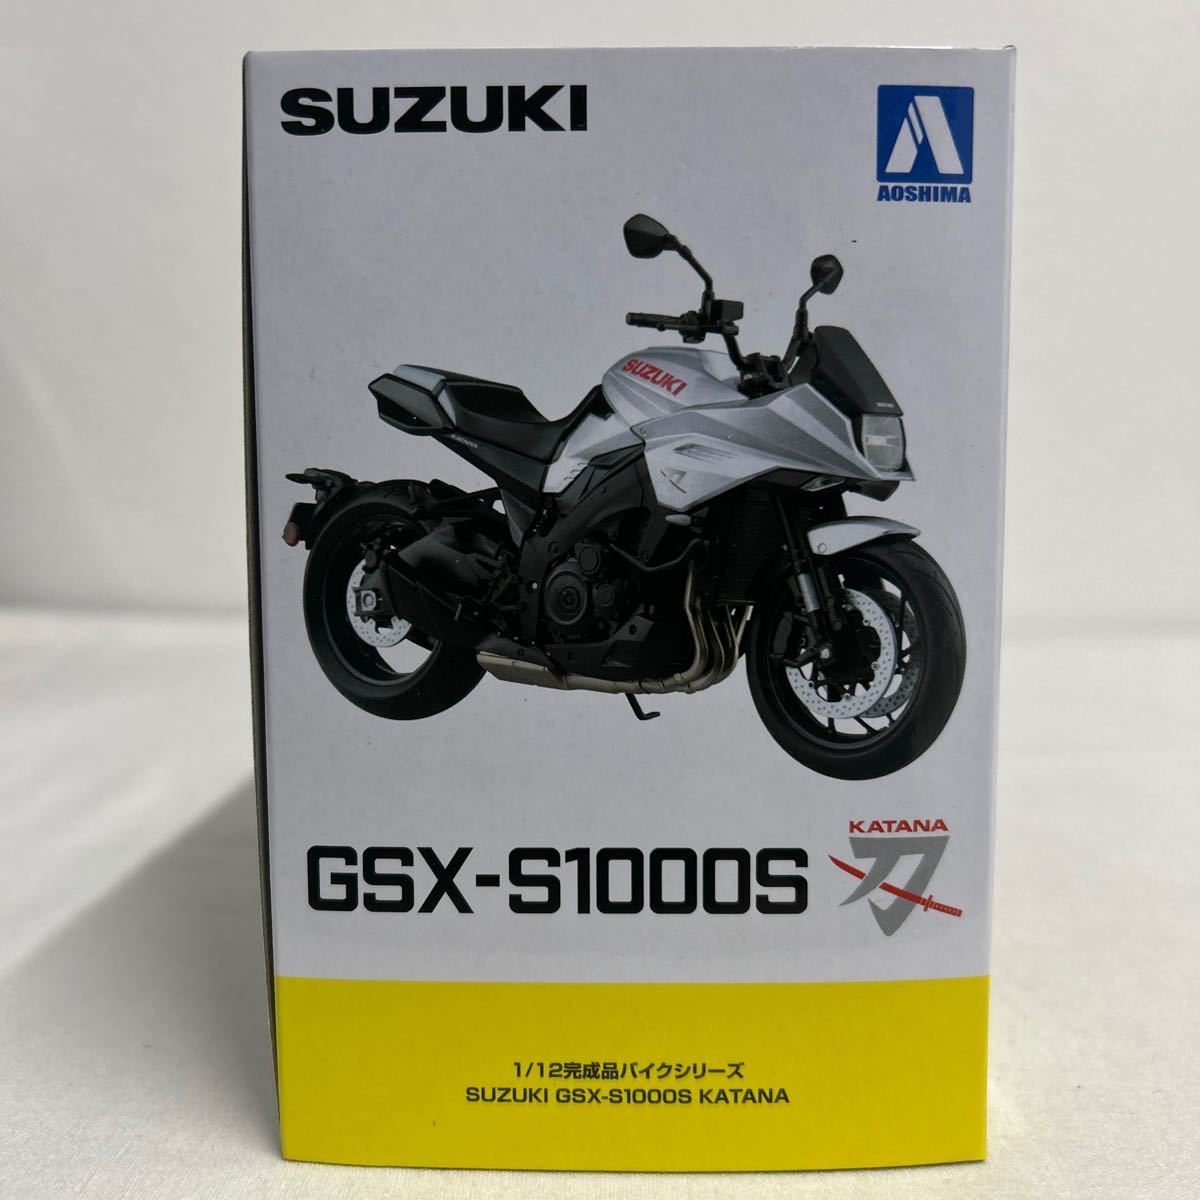 アオシマ 1/12 SUZUKI GSX-S1000S KATANA グラススパークルブラック スズキ カタナ 刀 完成品バイクシリーズ ミニカー モデルカーの画像5